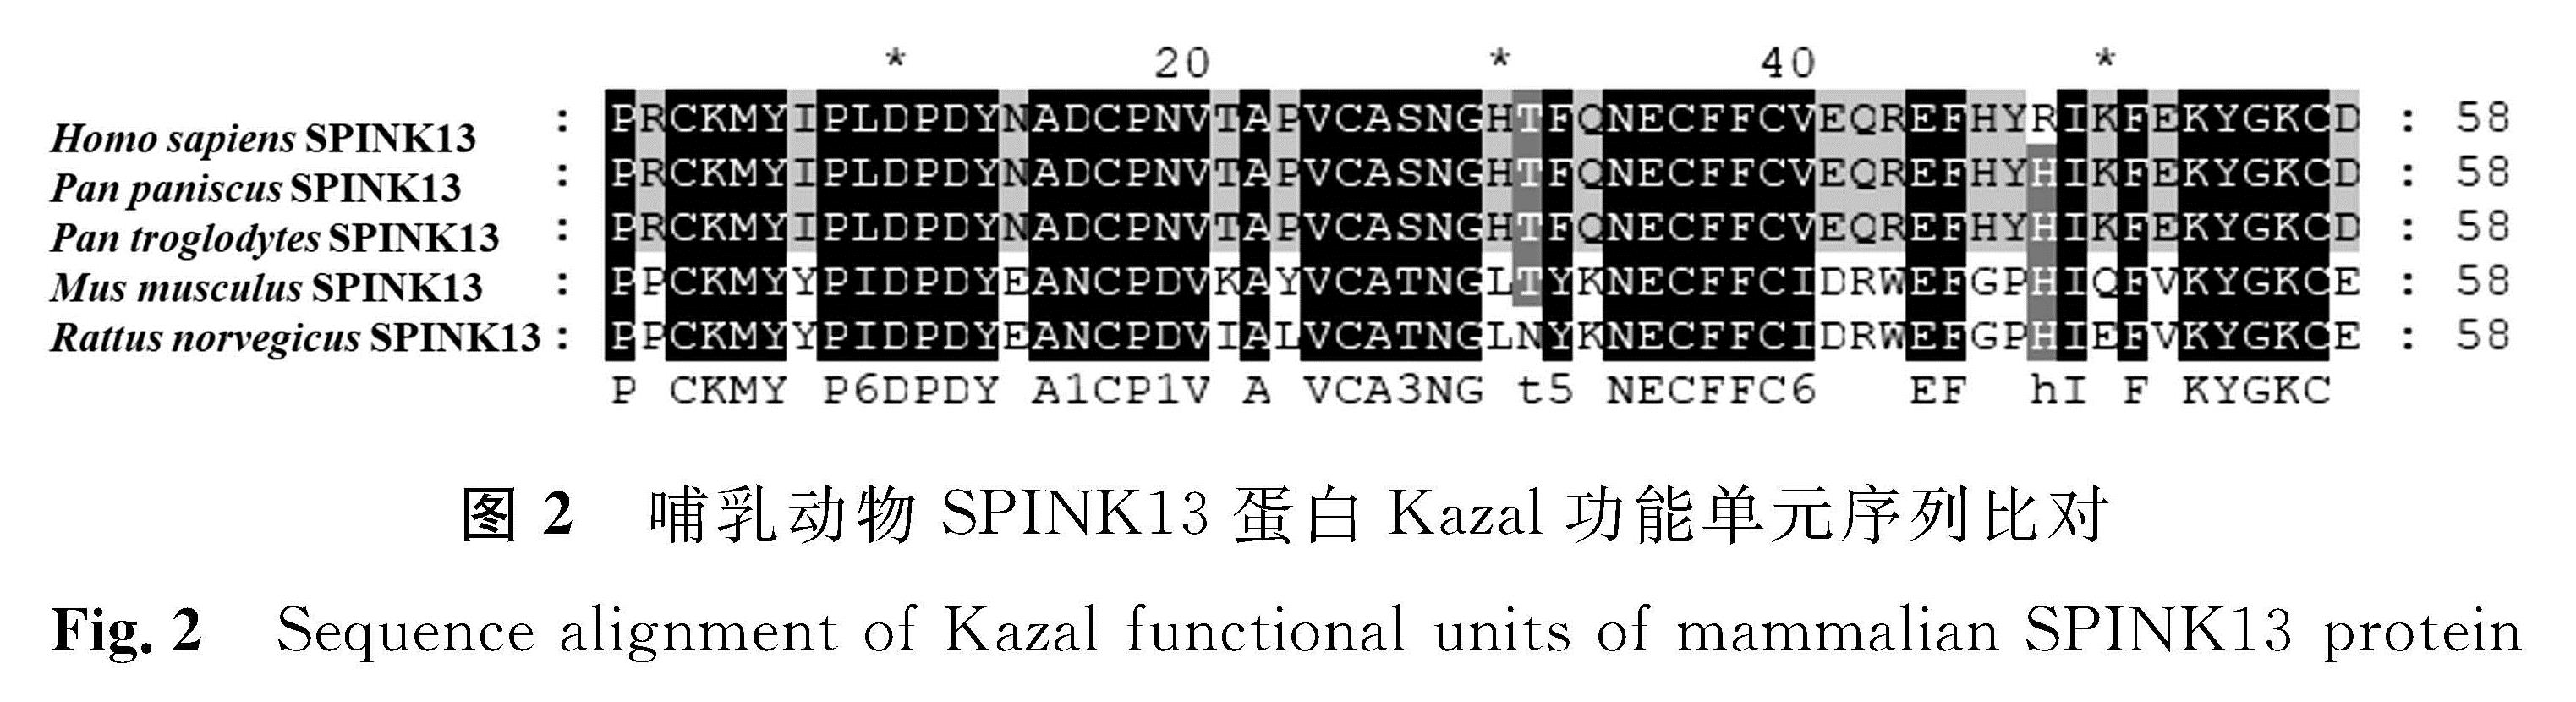 图2 哺乳动物SPINK13蛋白Kazal功能单元序列比对<br/>Fig.2 Sequence alignment of Kazal functional units of mammalian SPINK13 protein